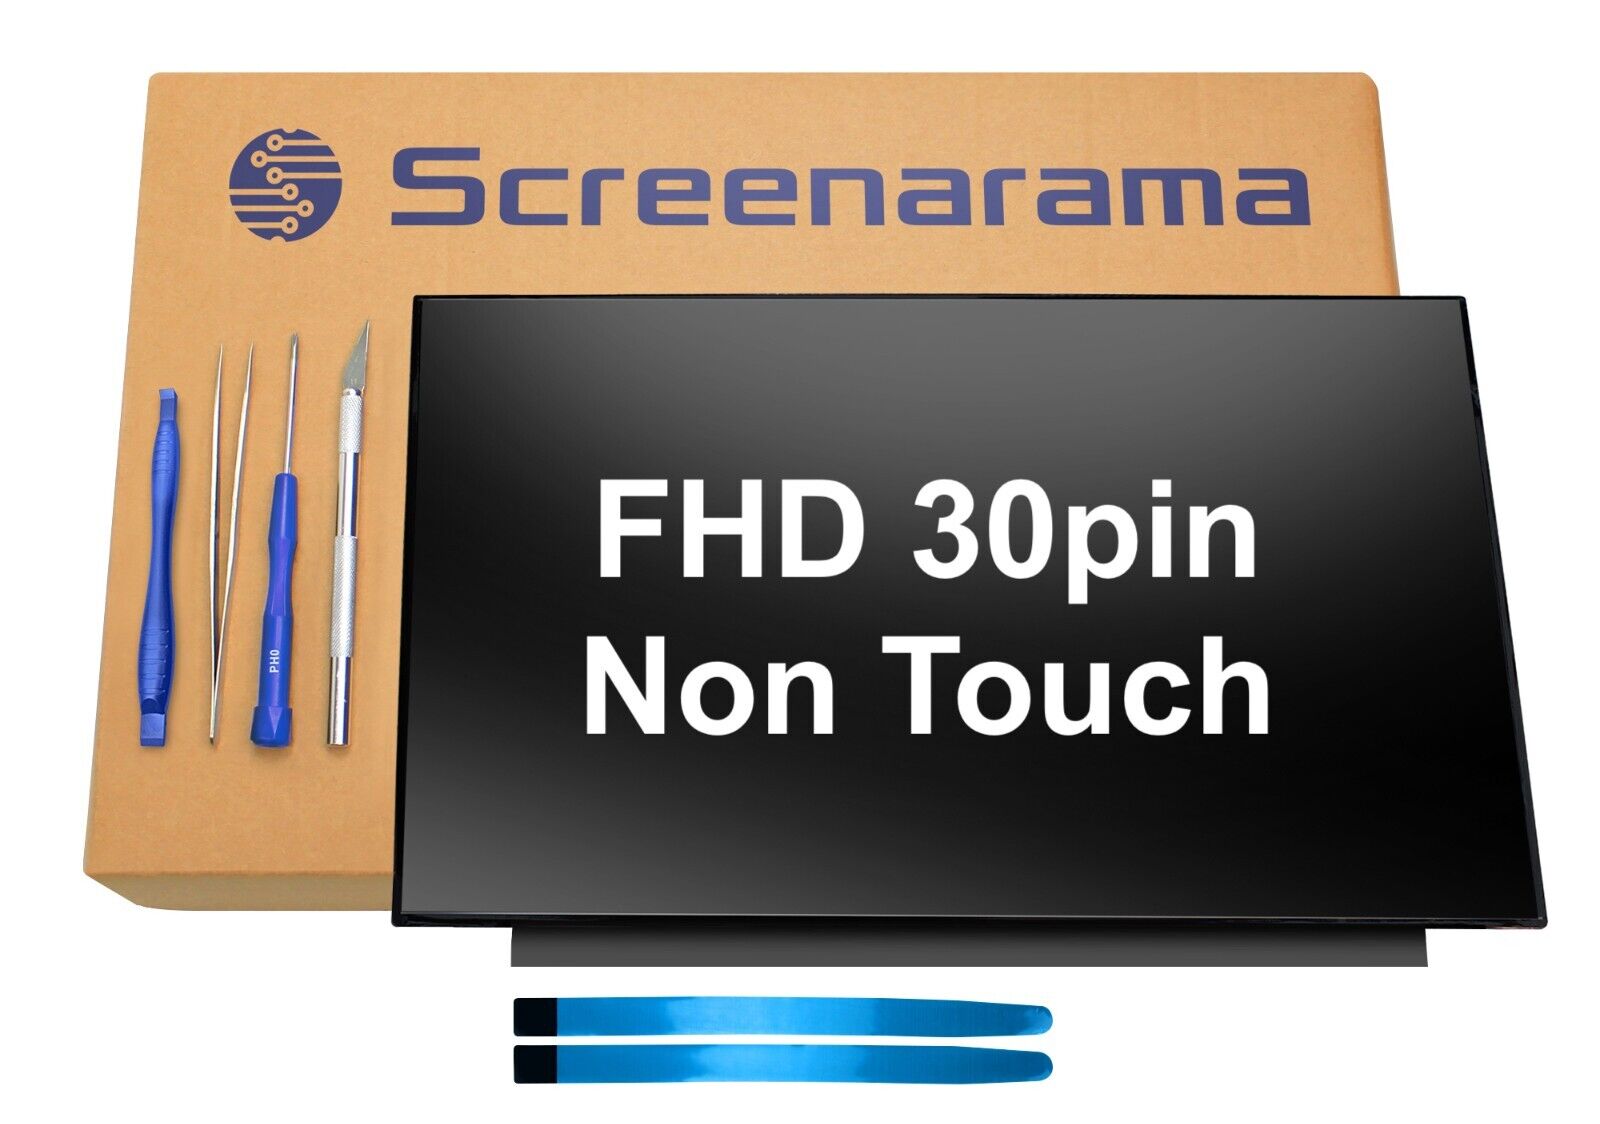 HP L71938-001 for 15-EC FHD 1080p 30pin LED LCD Screen + Tools SCREENARAMA FAST